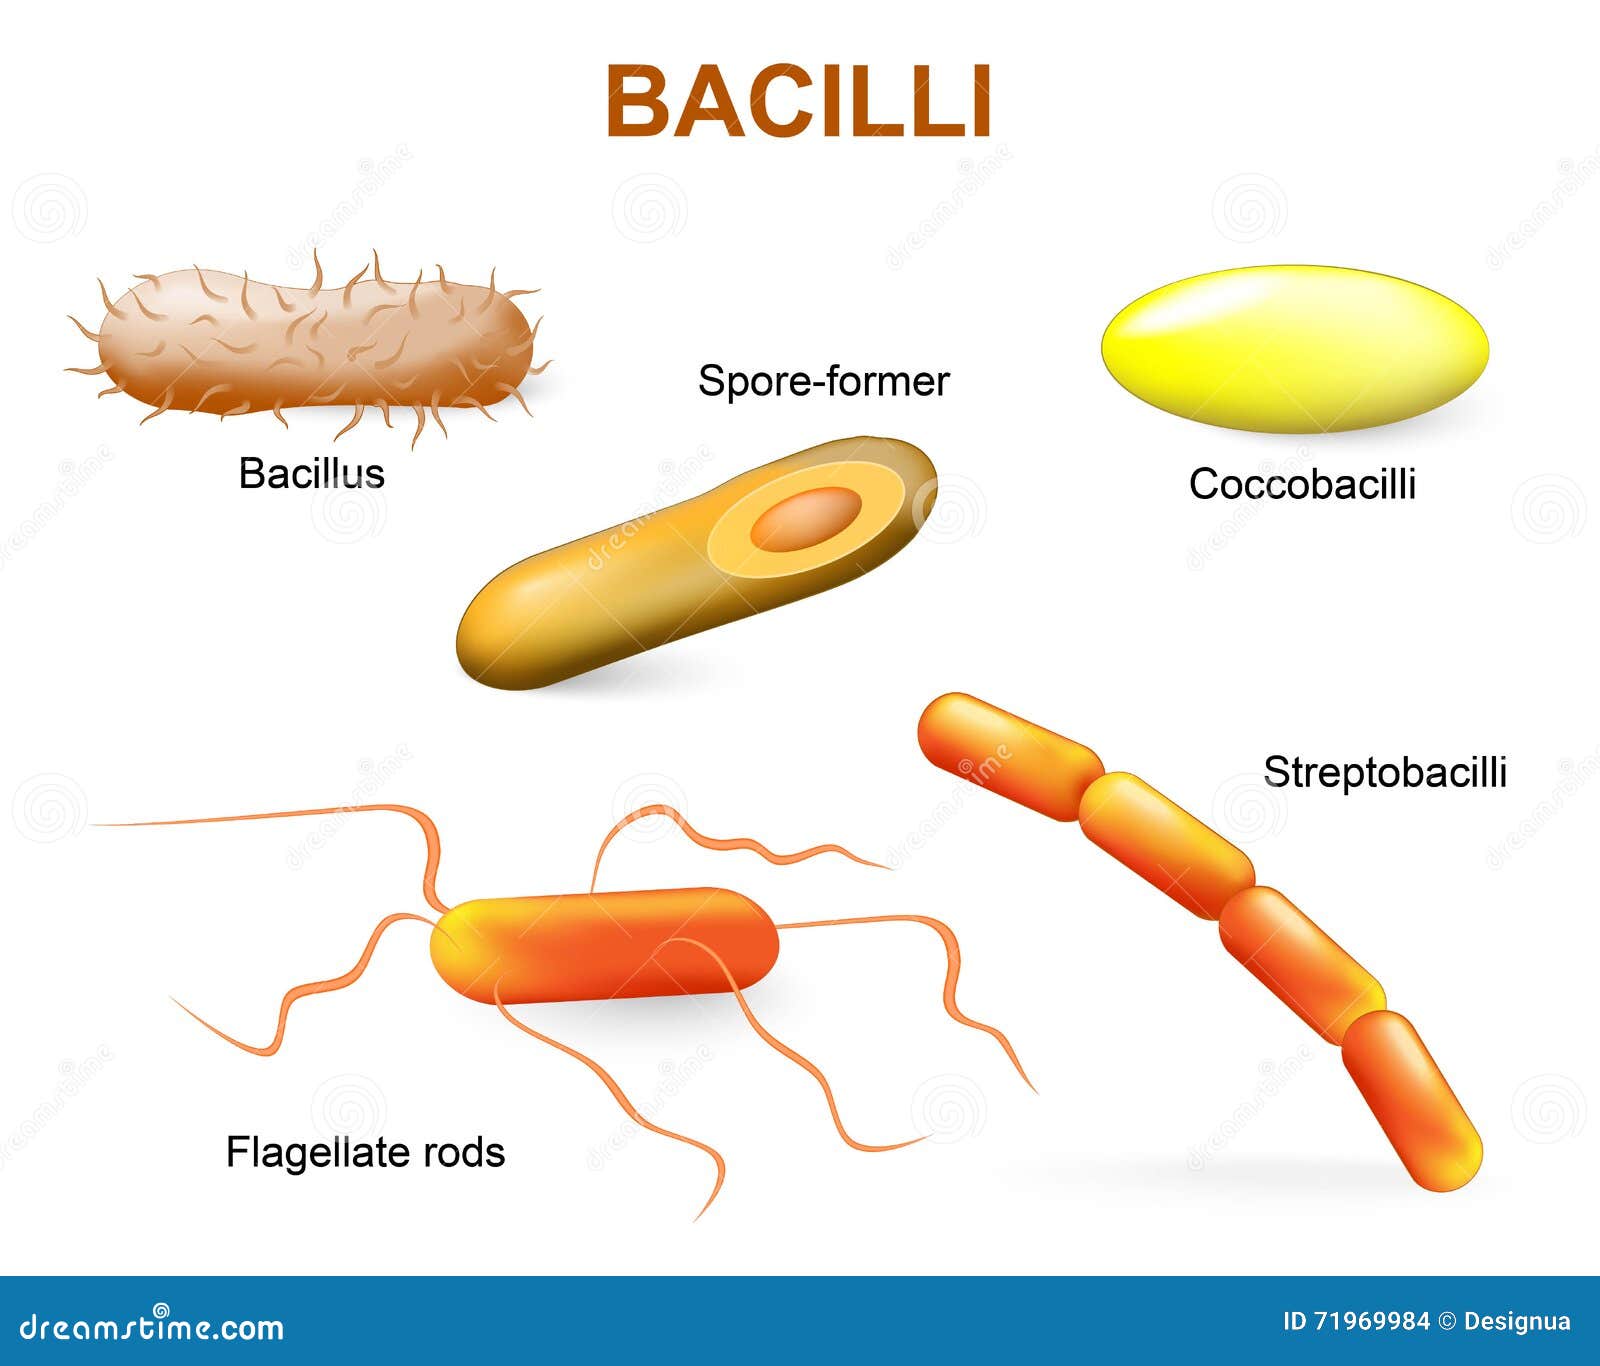 types of bacteria. bacilli